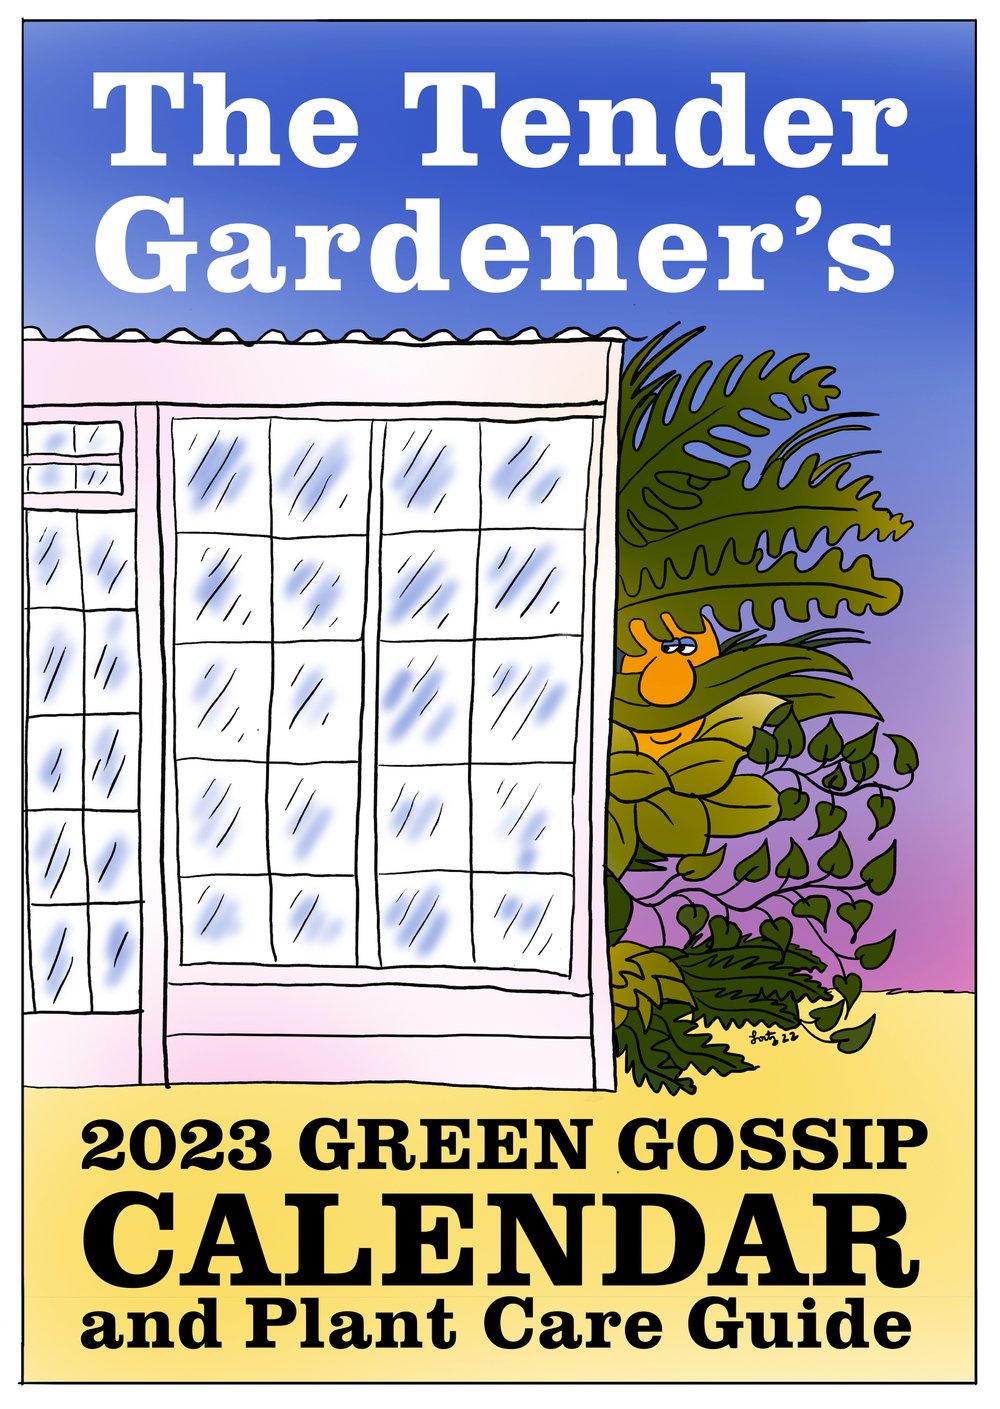 The Tender Gardener's Calendar!!! — The Tender Gardener